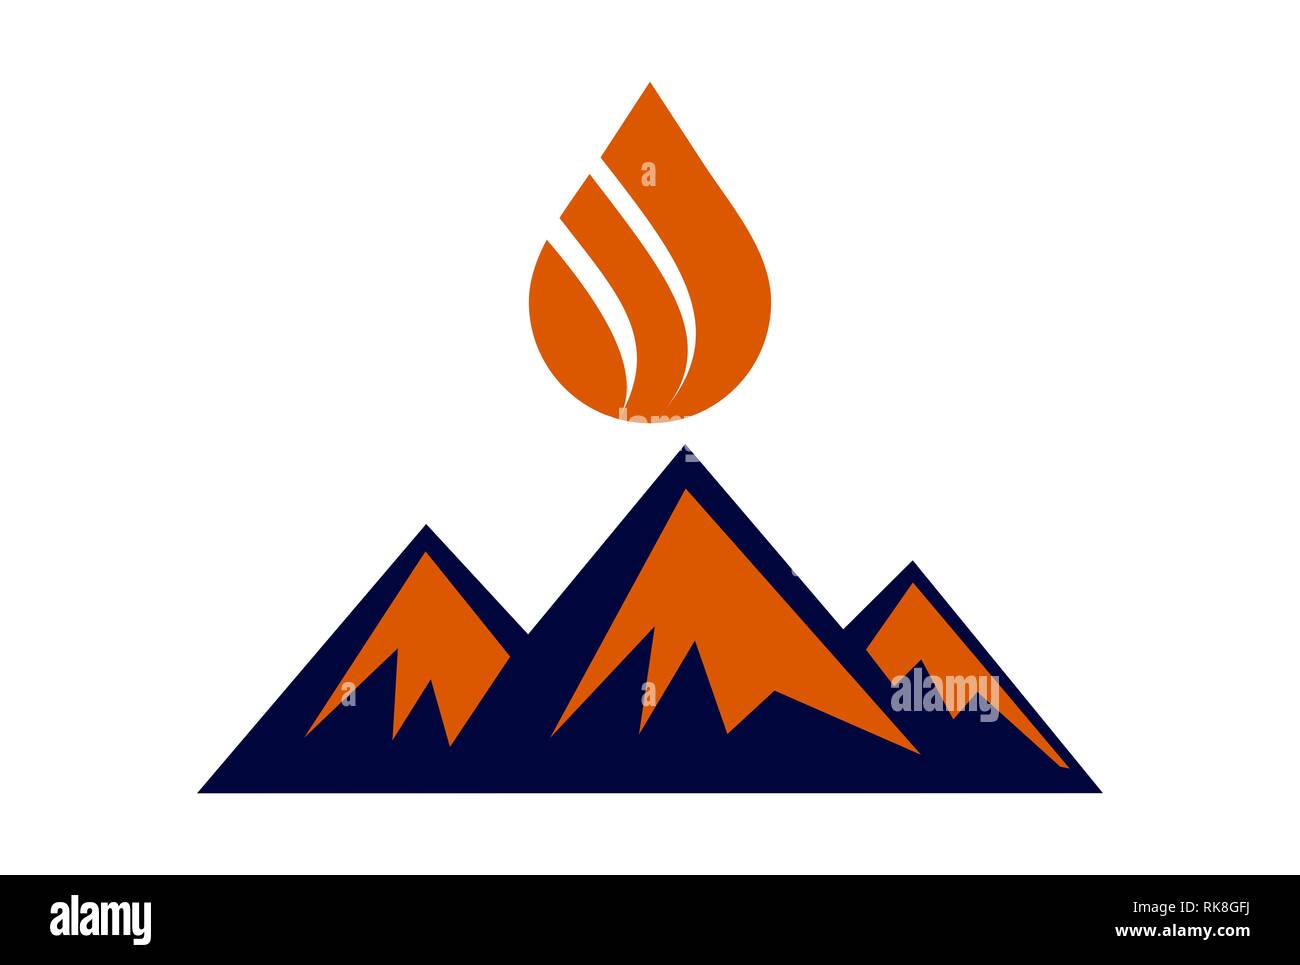 abstract mountain fire logo icon vector concept flat design Stock Photo